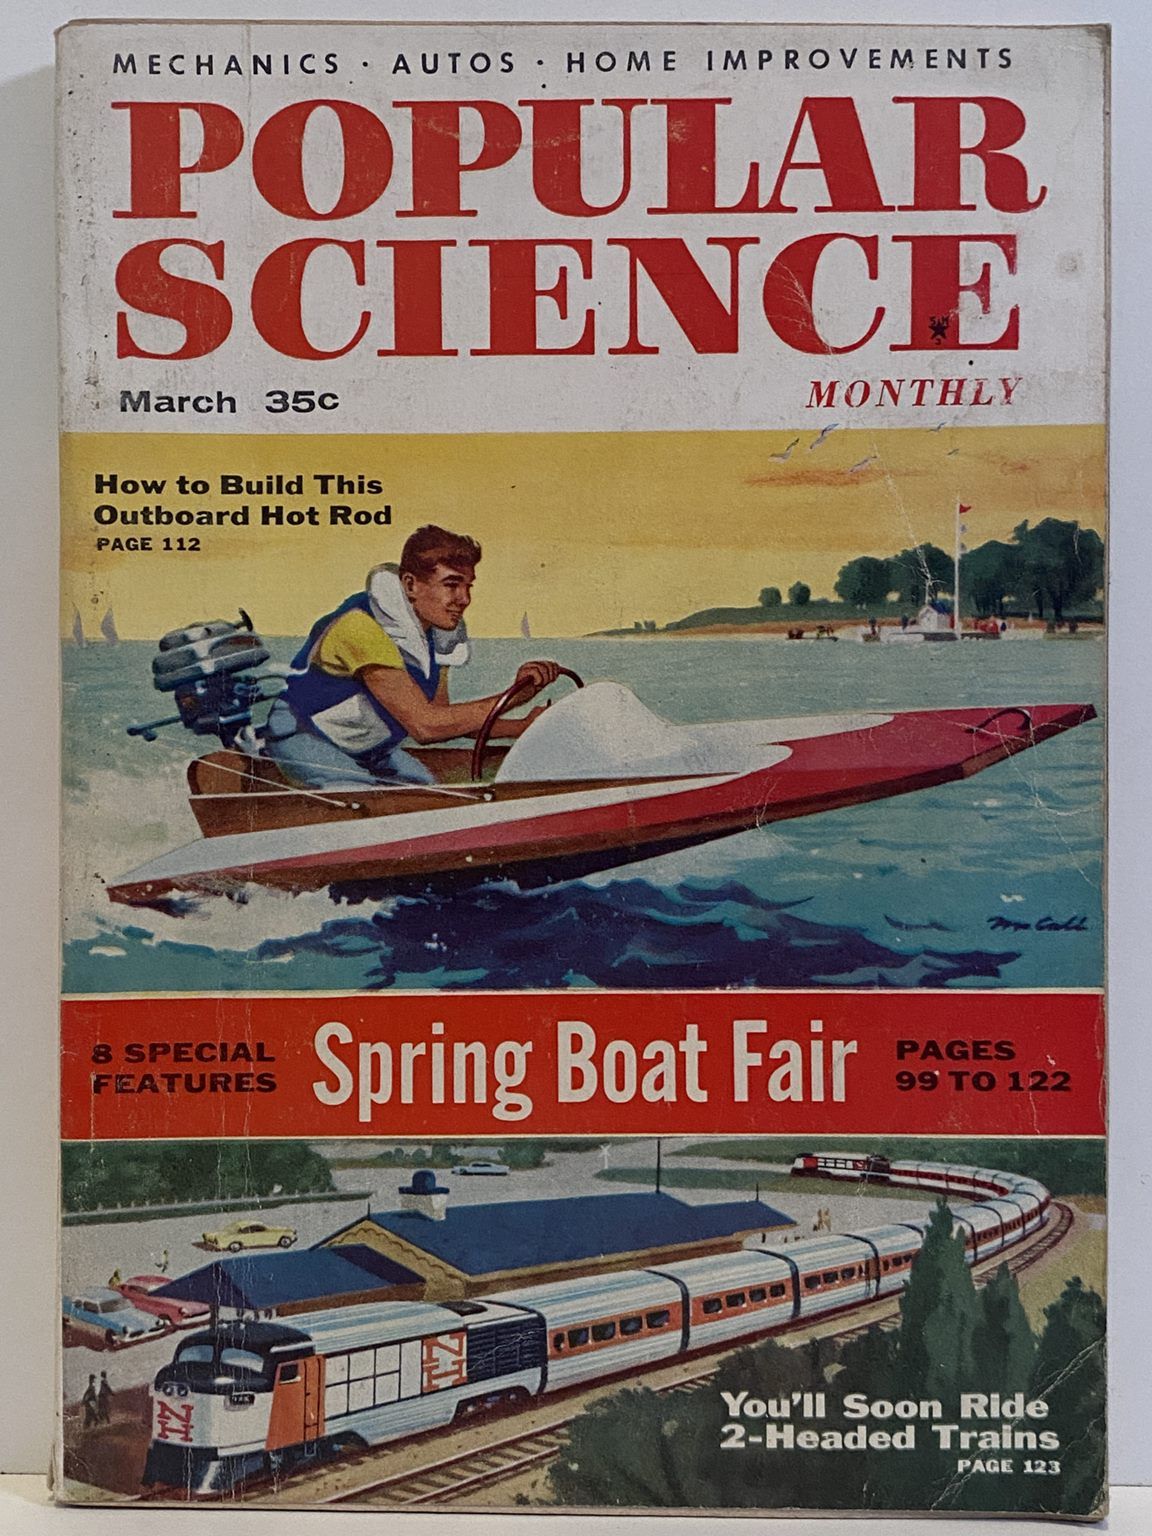 VINTAGE MAGAZINE: Popular Science, Vol. 168, No. 3 - March 1956